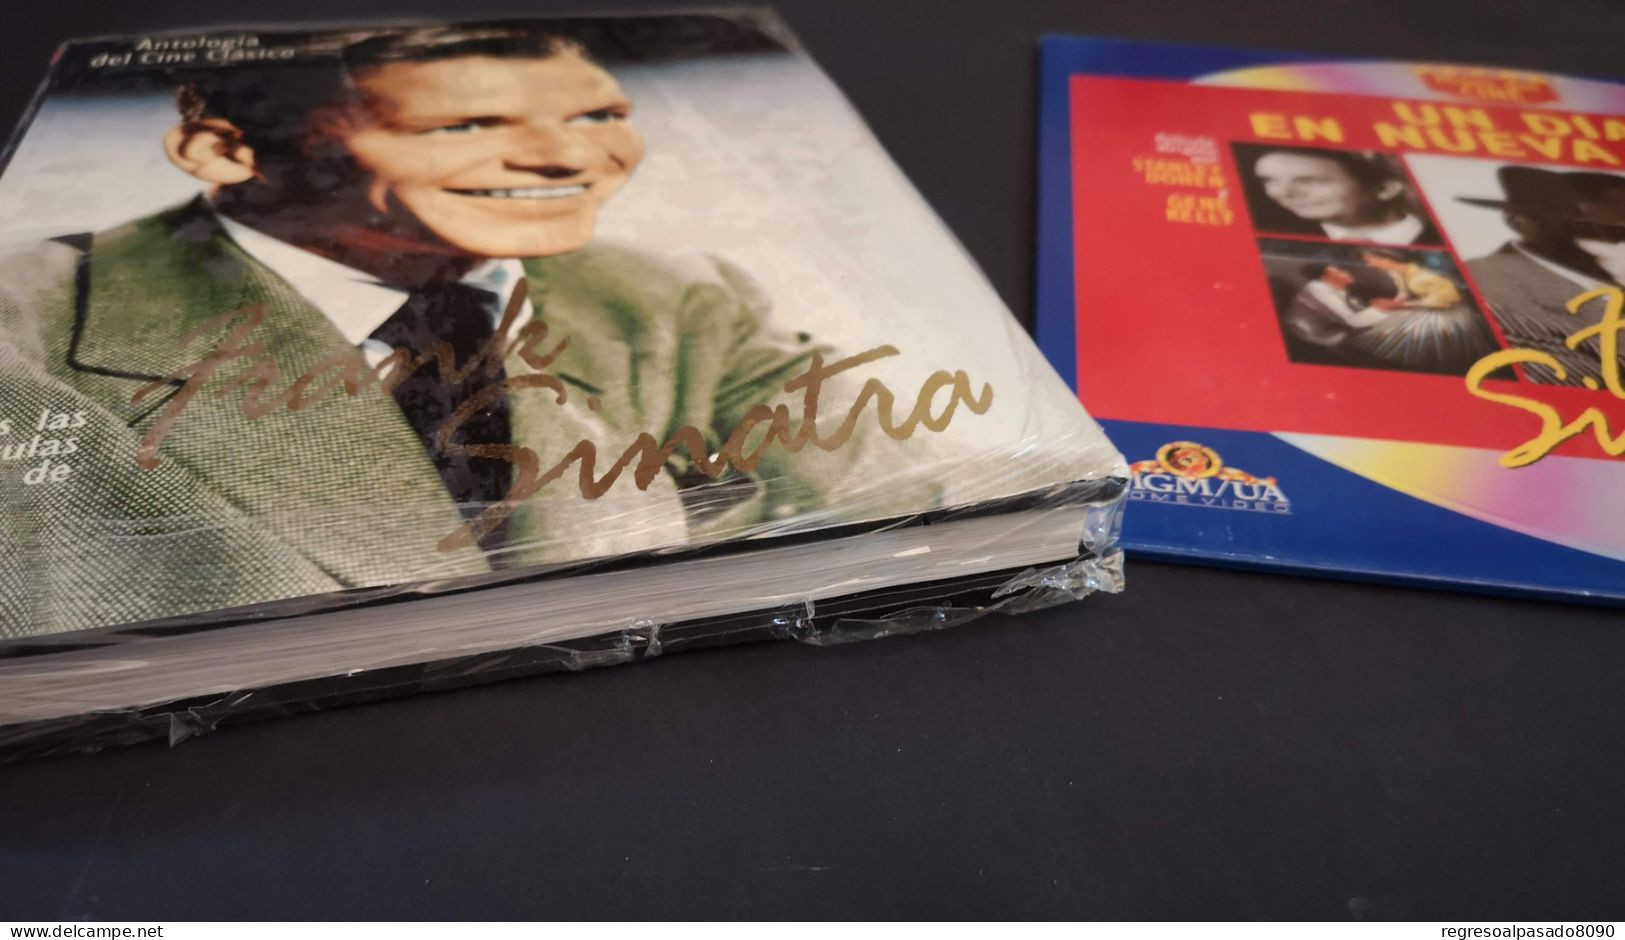 Frank Sinatra Libro Y Película Laser Disc Laserdisc Un Dia En Nueva York. Mitos Del Cine Planeta Años 90 - Klassiker